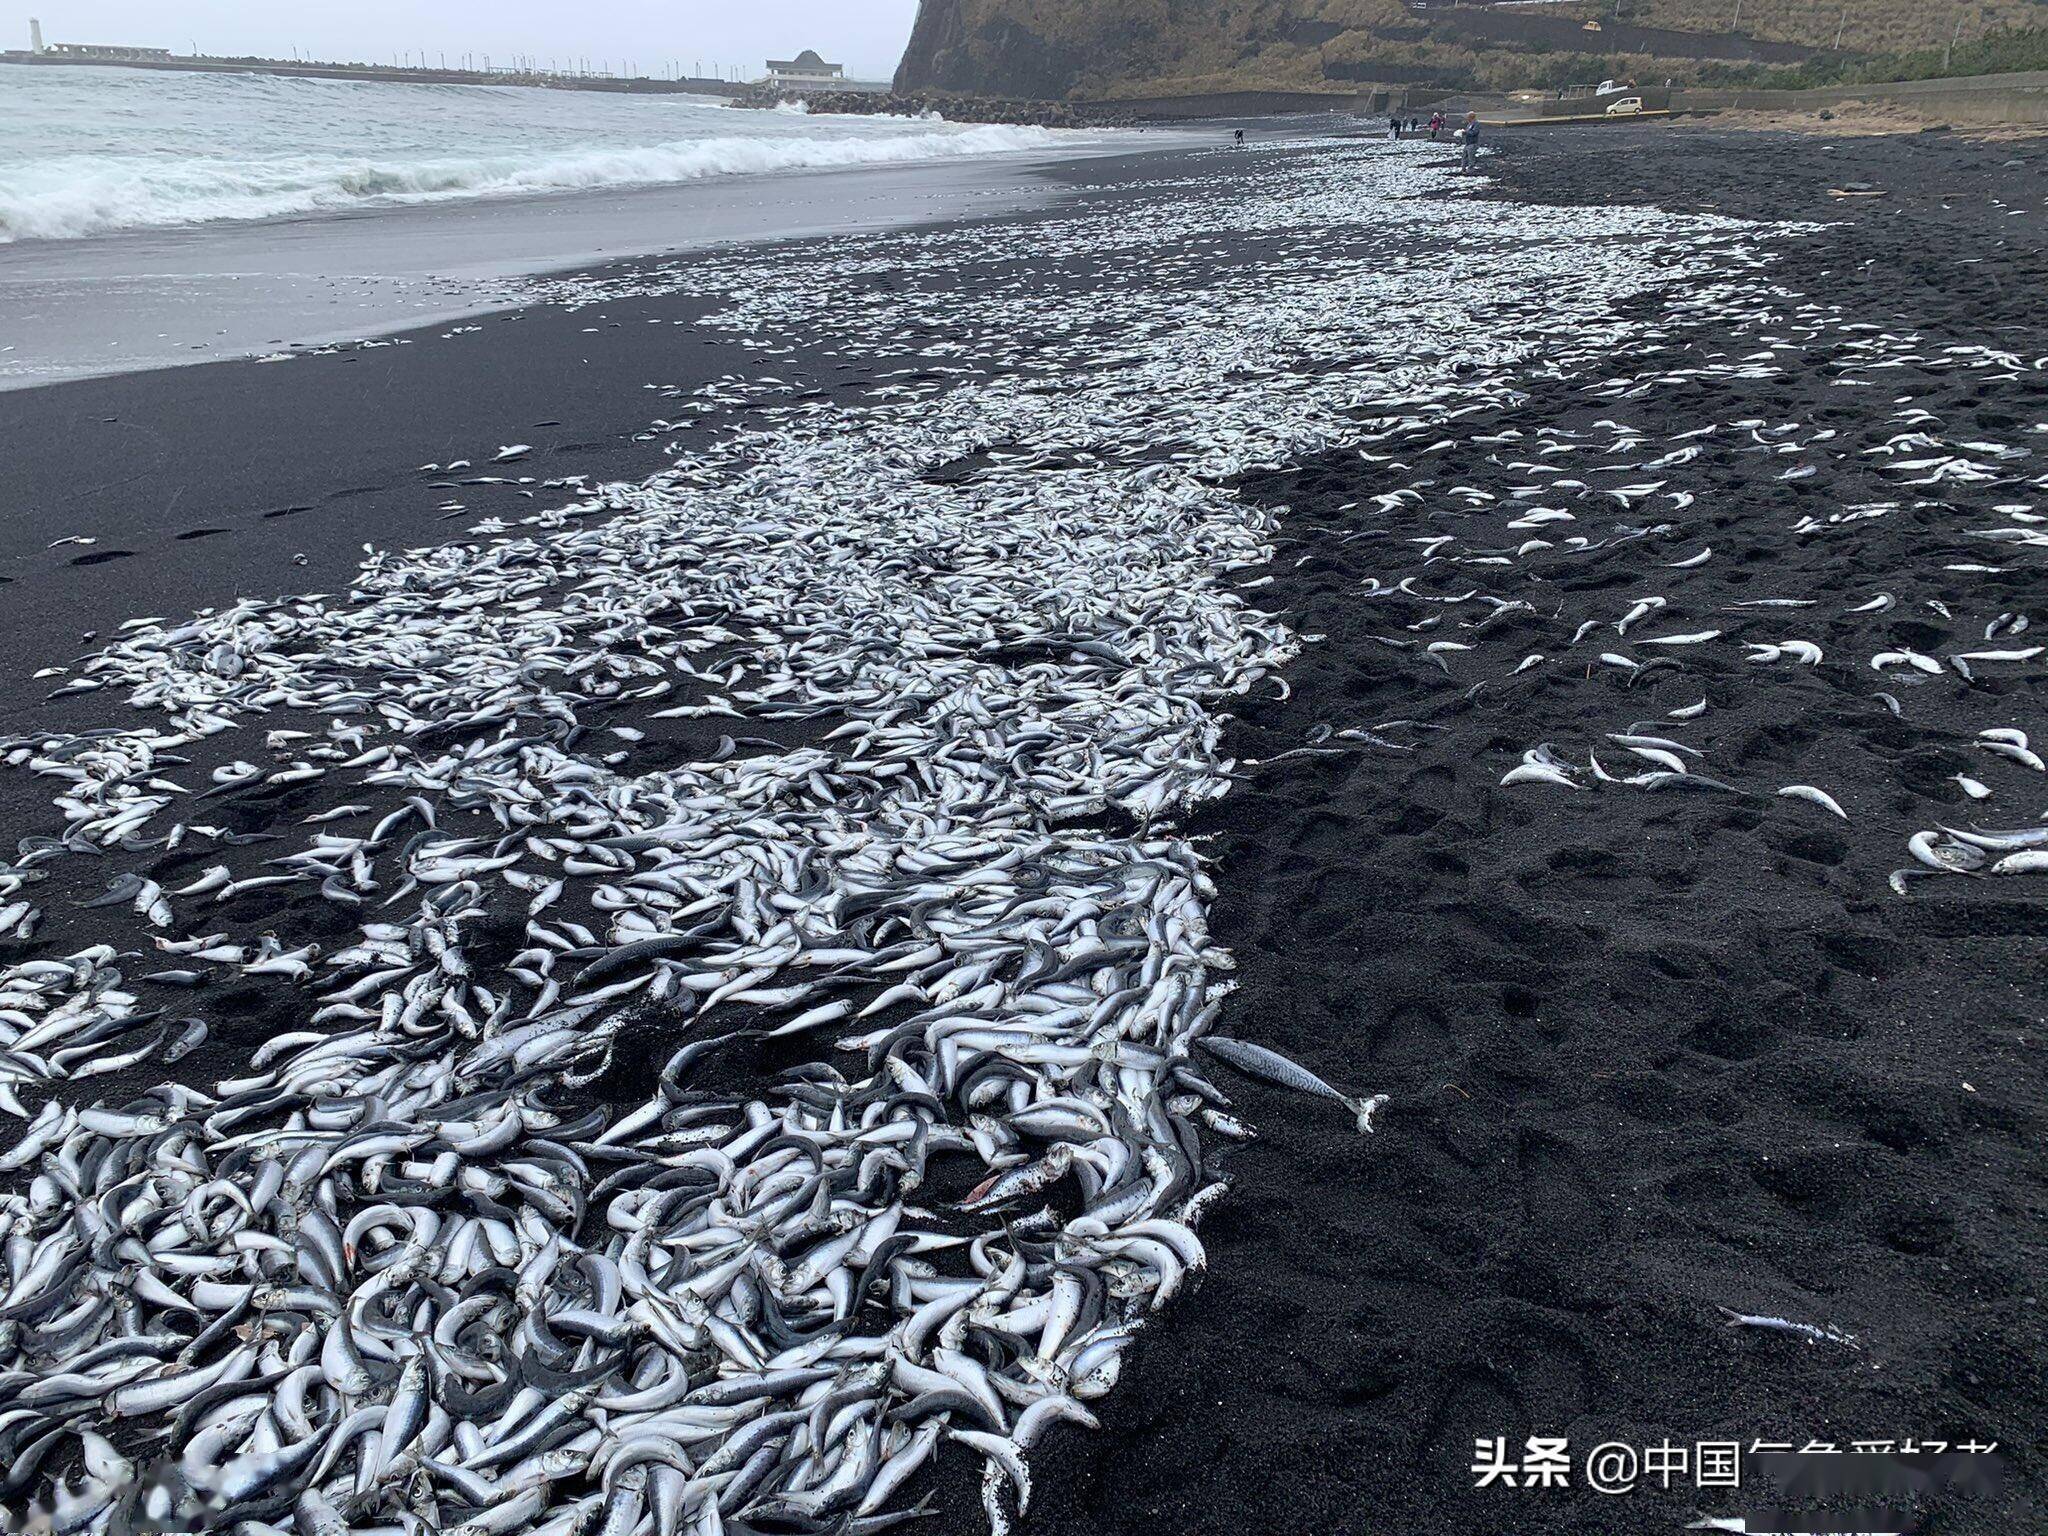 日本海边突现大量死鱼,和全球变暖有关?分析:或和地震有关